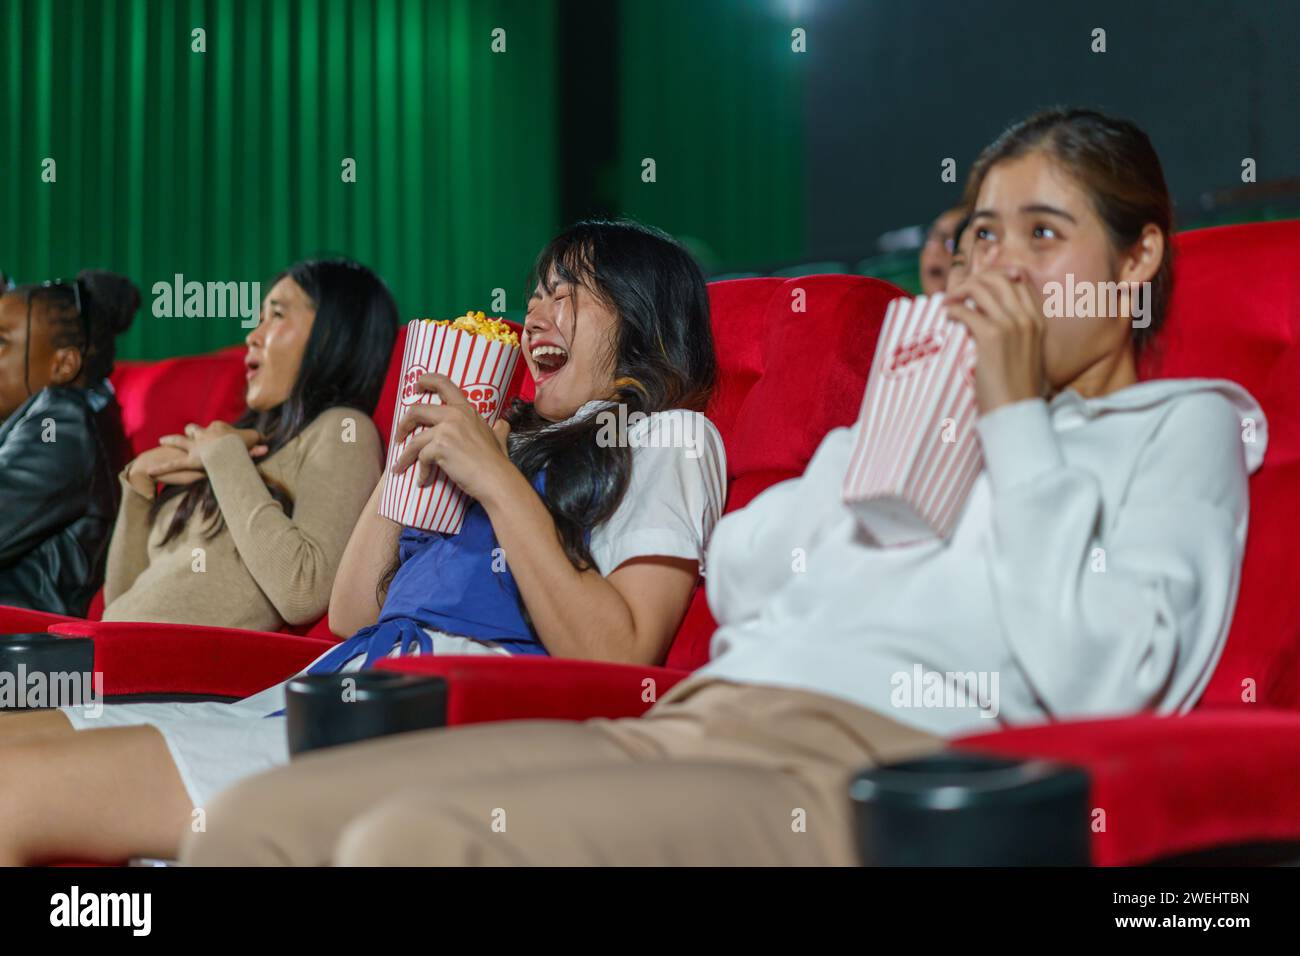 Les individus réagissent à un film d'horreur sur grand écran. Ce moment franc capture le frisson et l'effroi de l'expérience cinématographique Banque D'Images